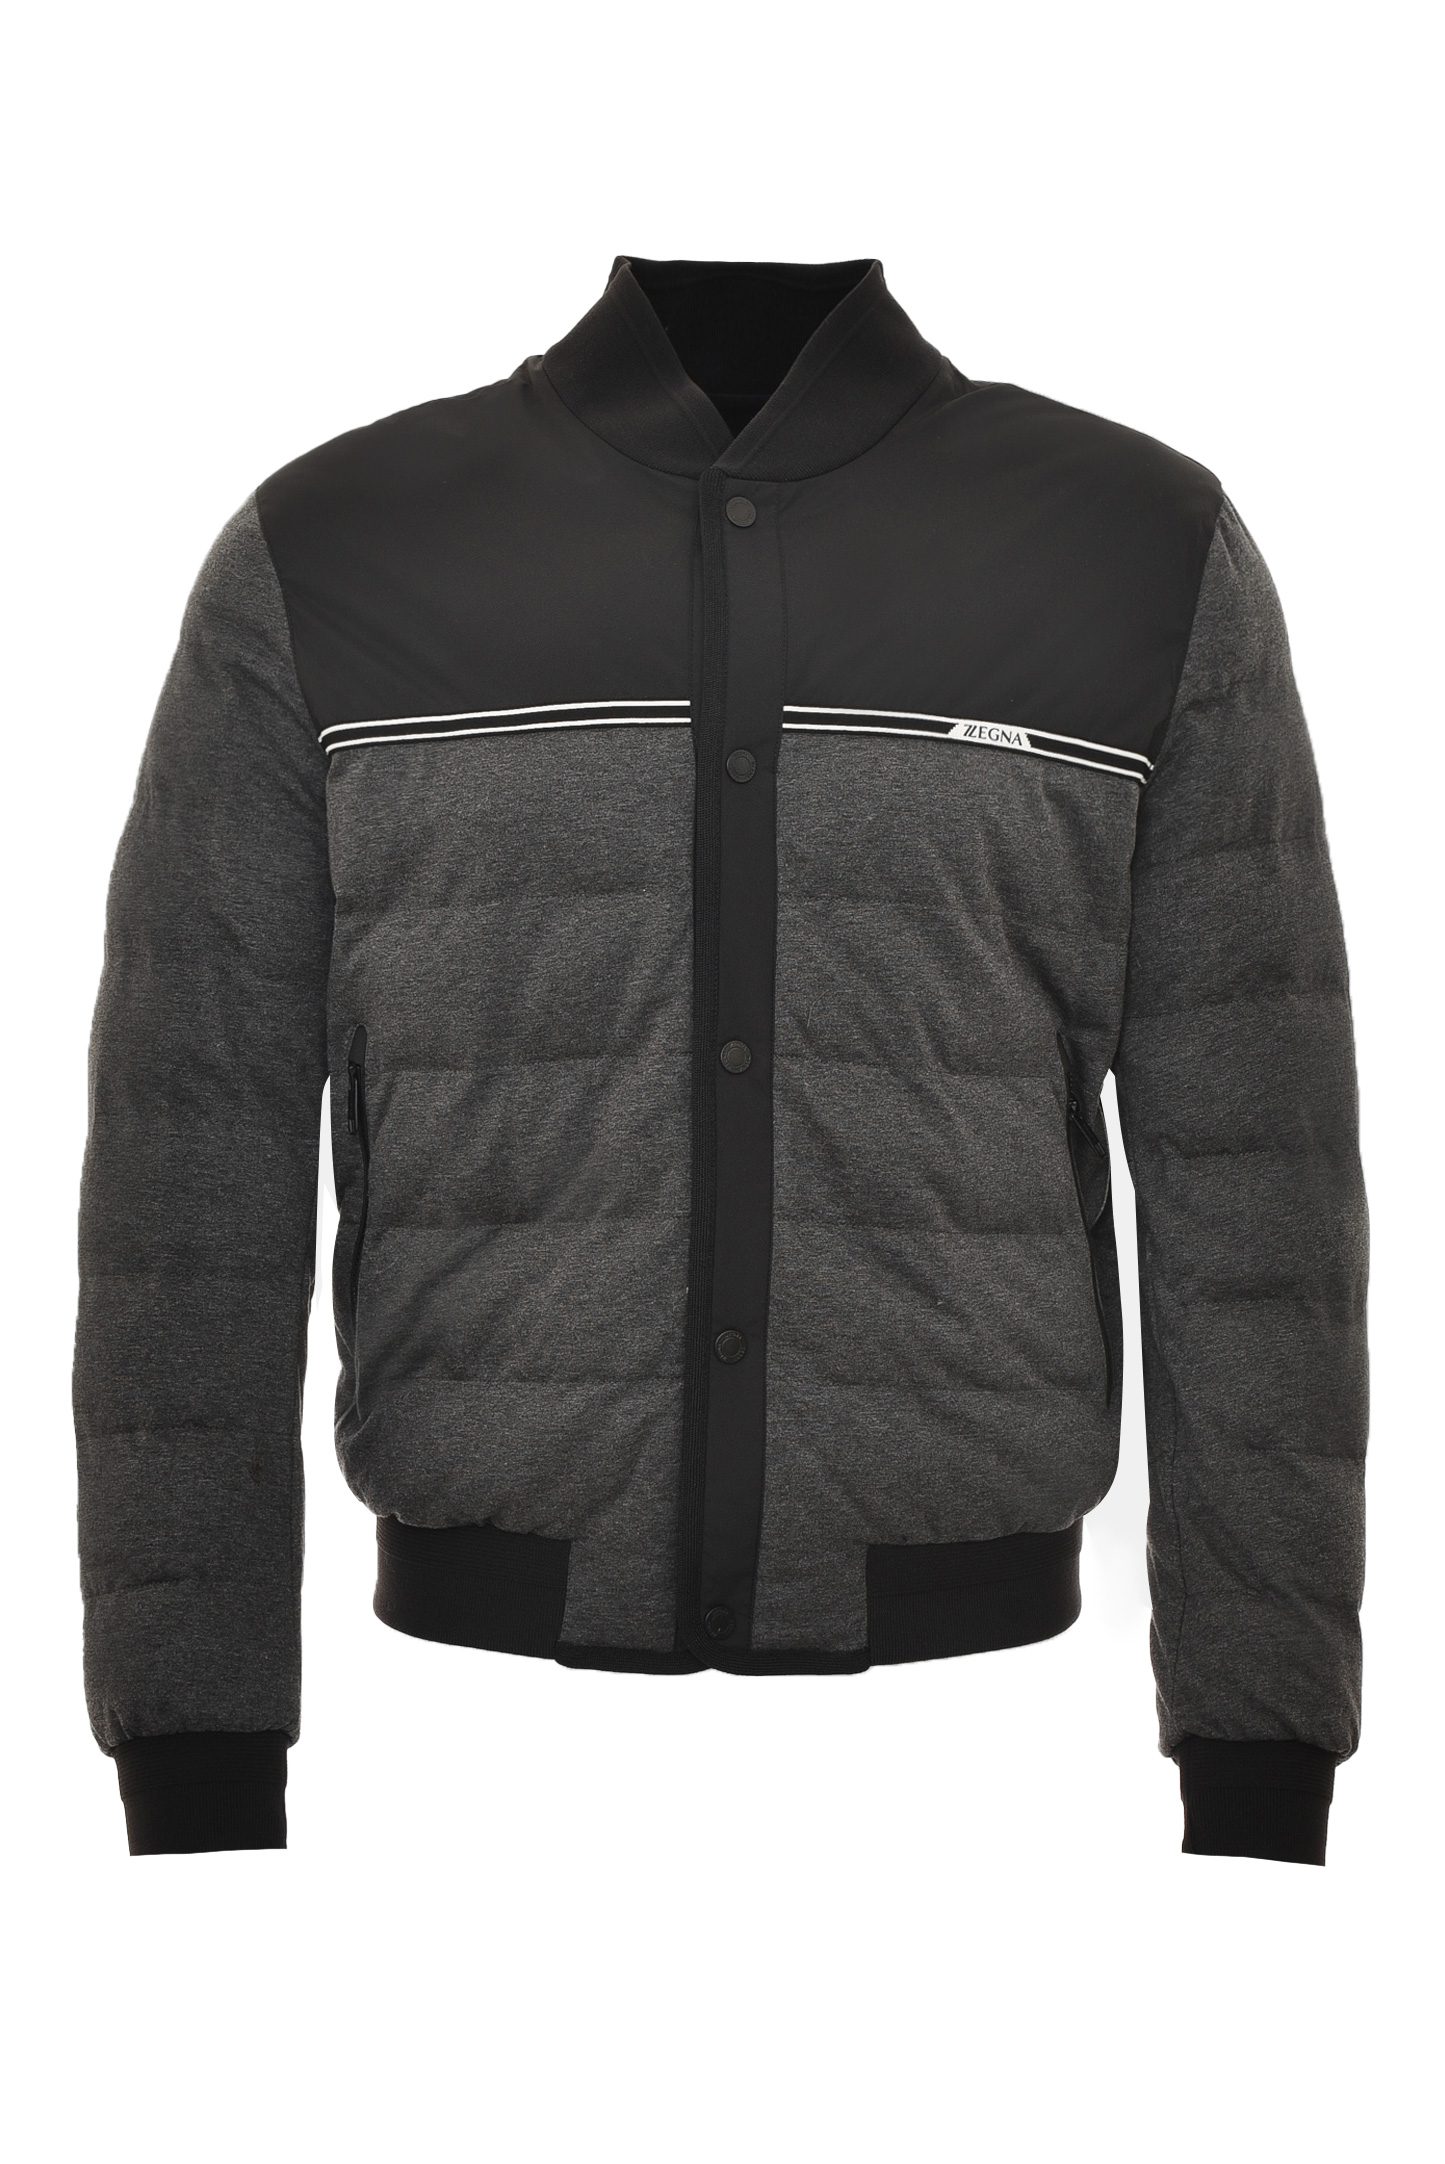 Куртка Z ZEGNA VY024 ZZ071, цвет: Серый, Мужской